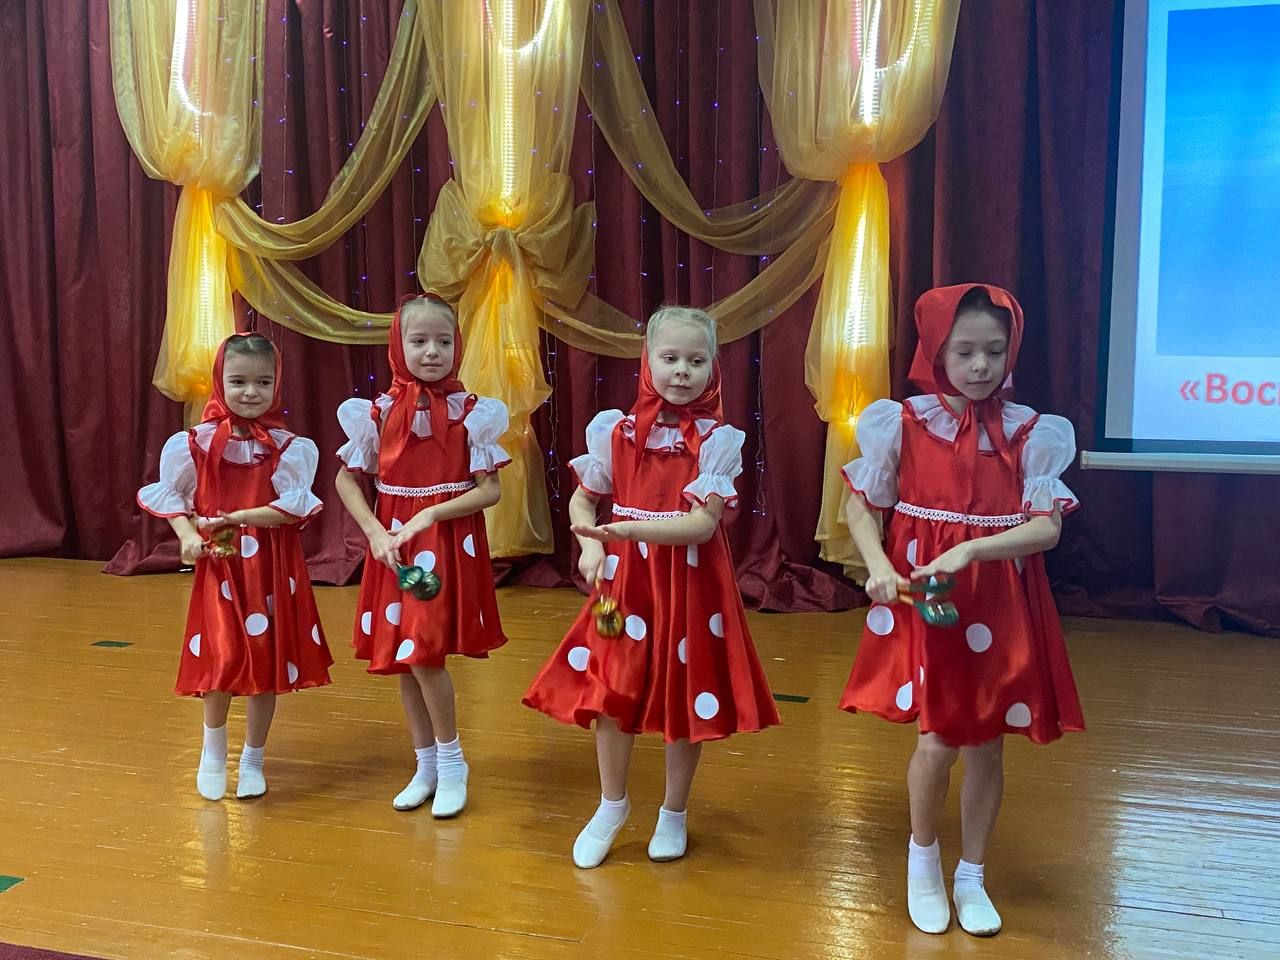 В Болгарской второй школе состоялась церемония награждения педагогов и воспитателей